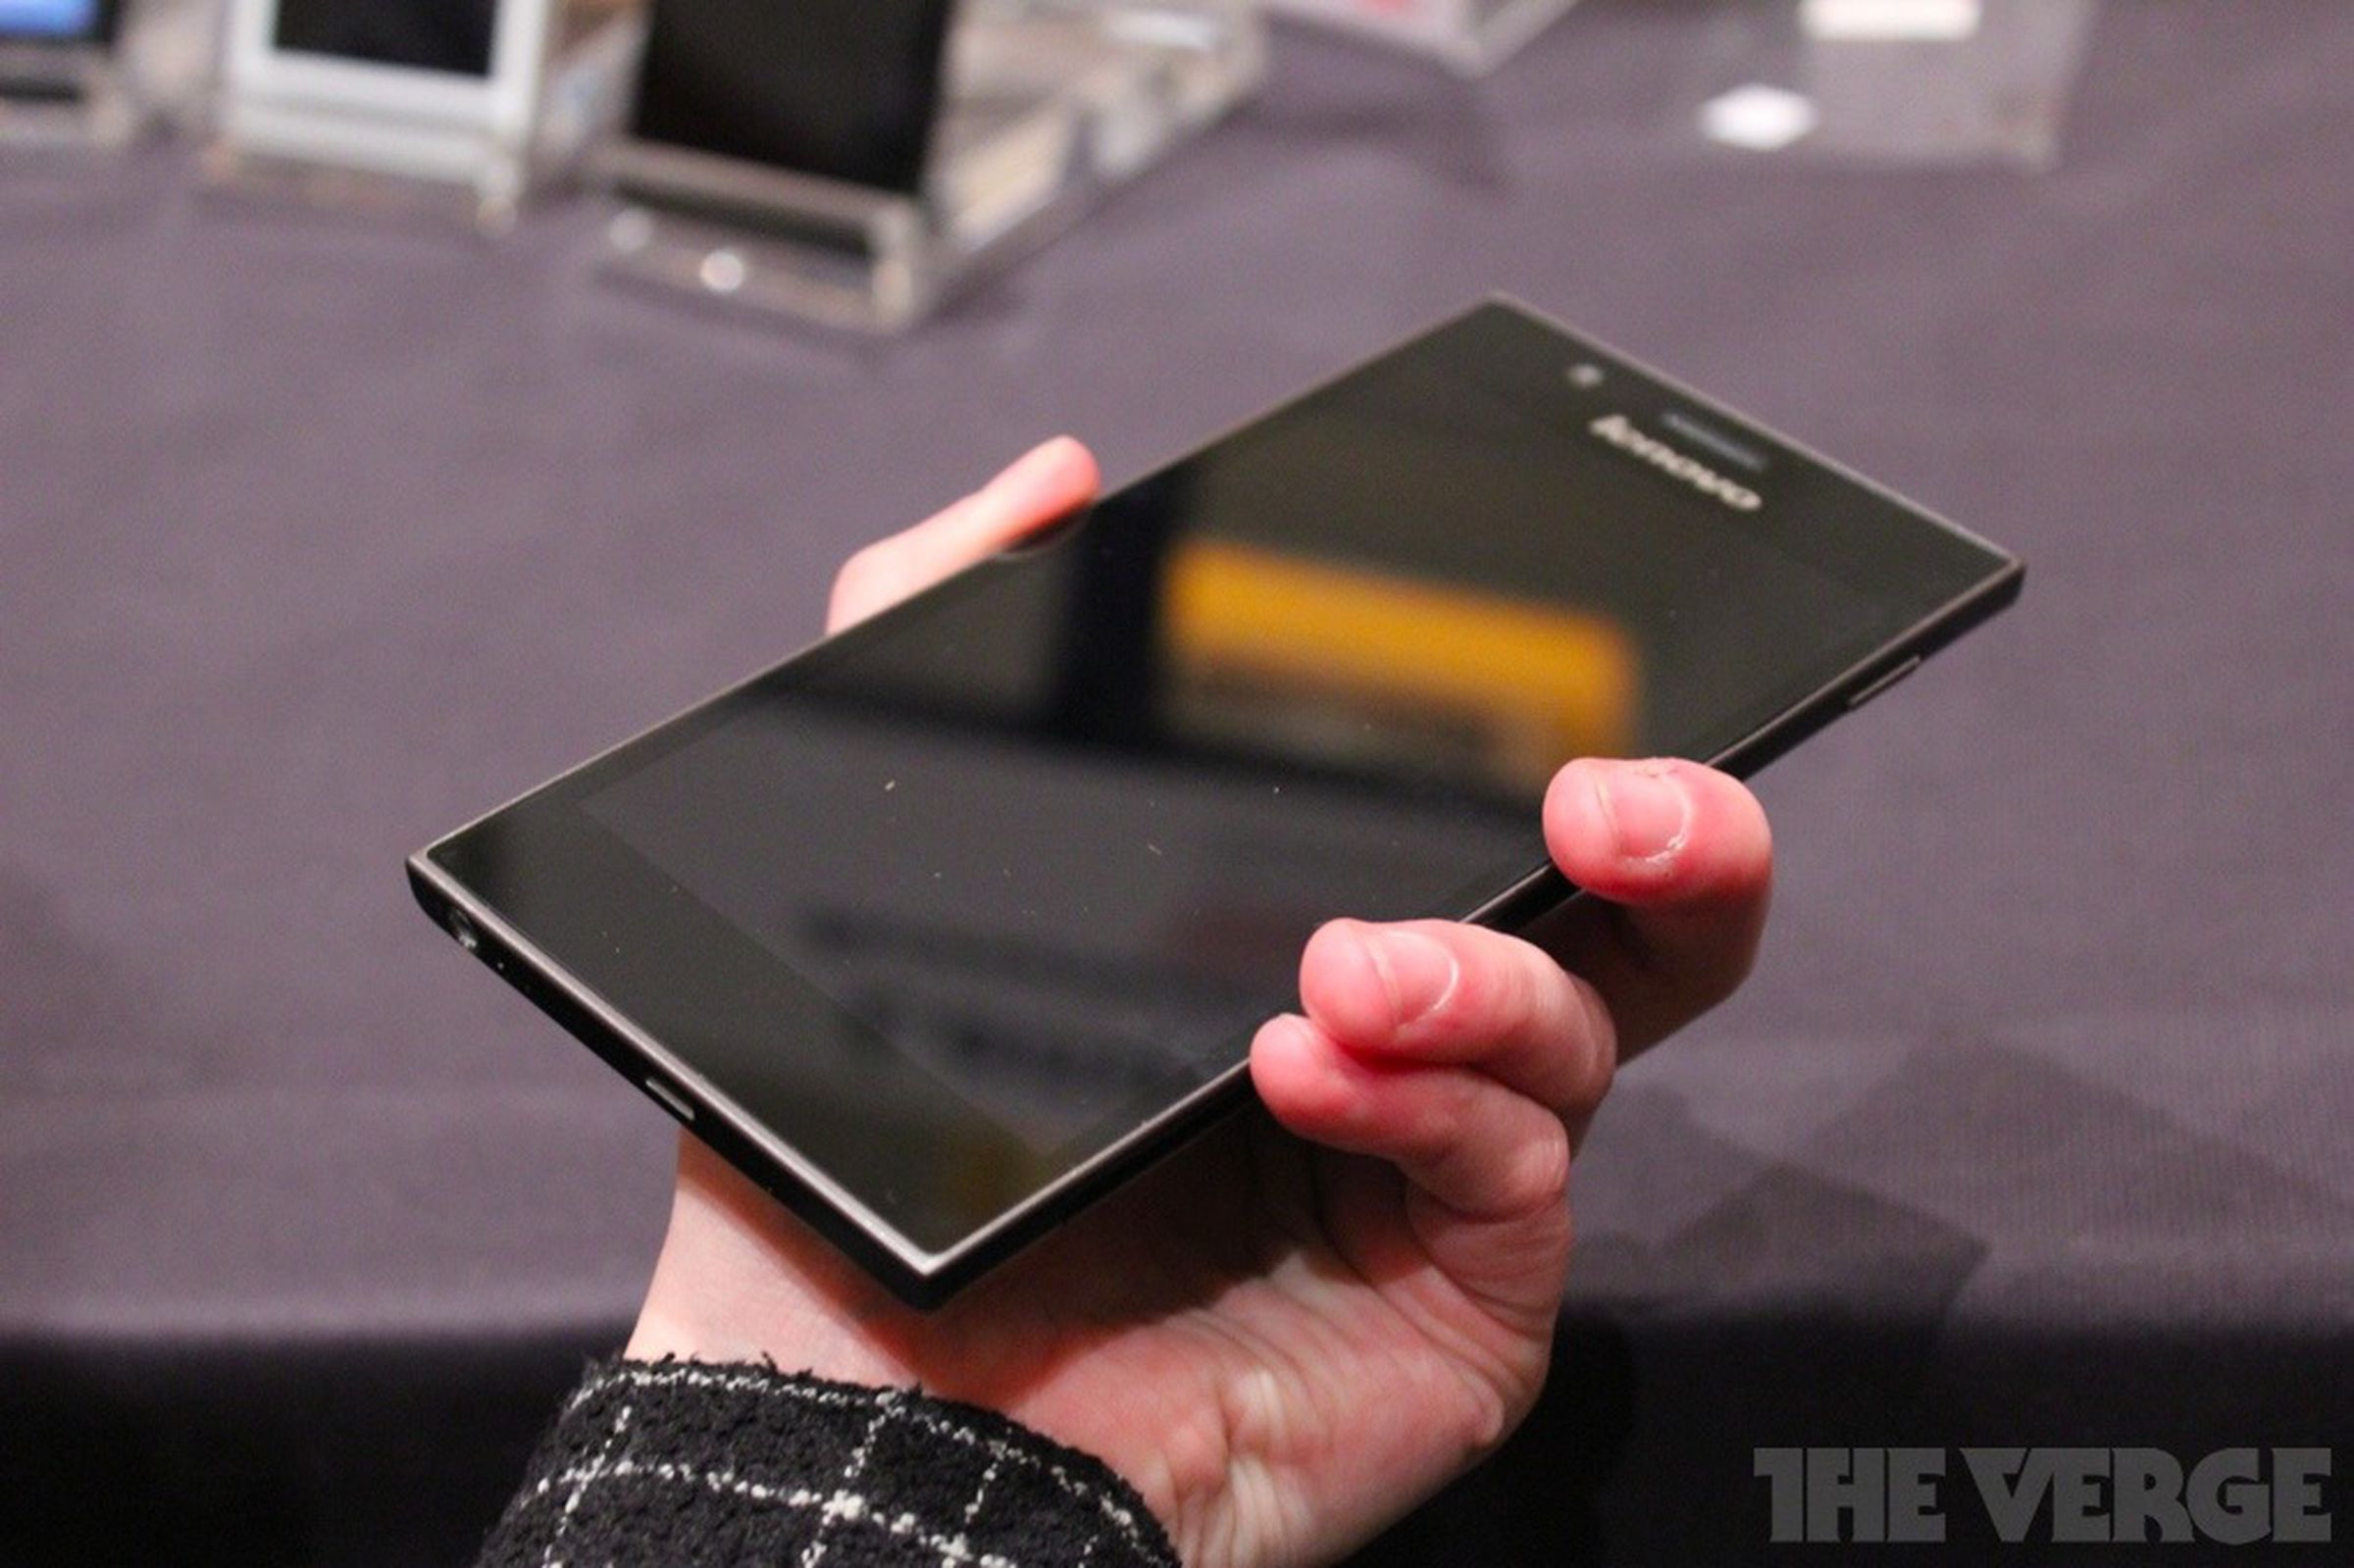 Lenovo 5.5-inch IdeaPhone K900 hands-on photos